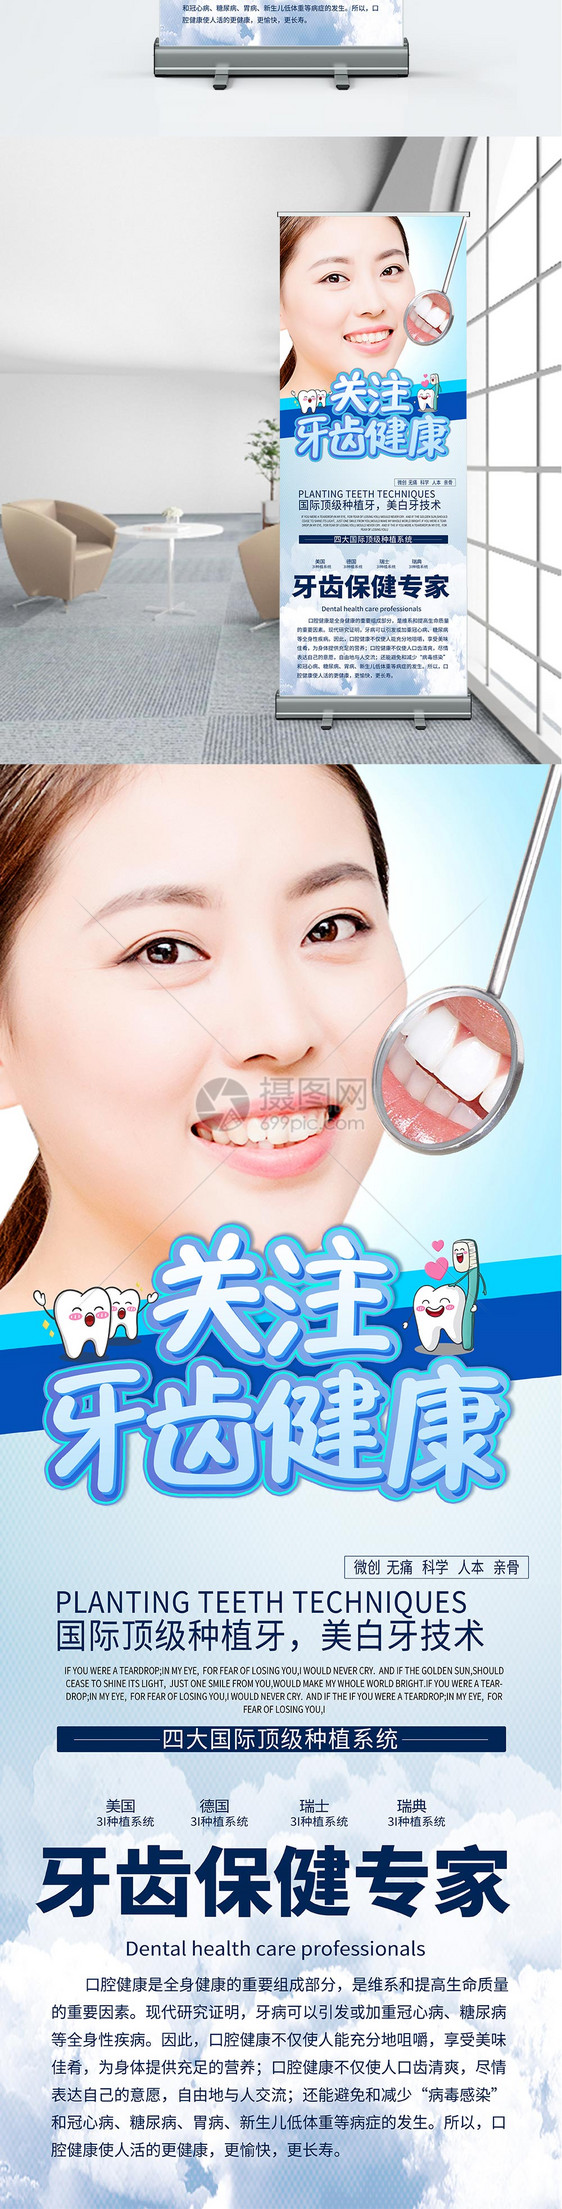 牙齿保健展架图片